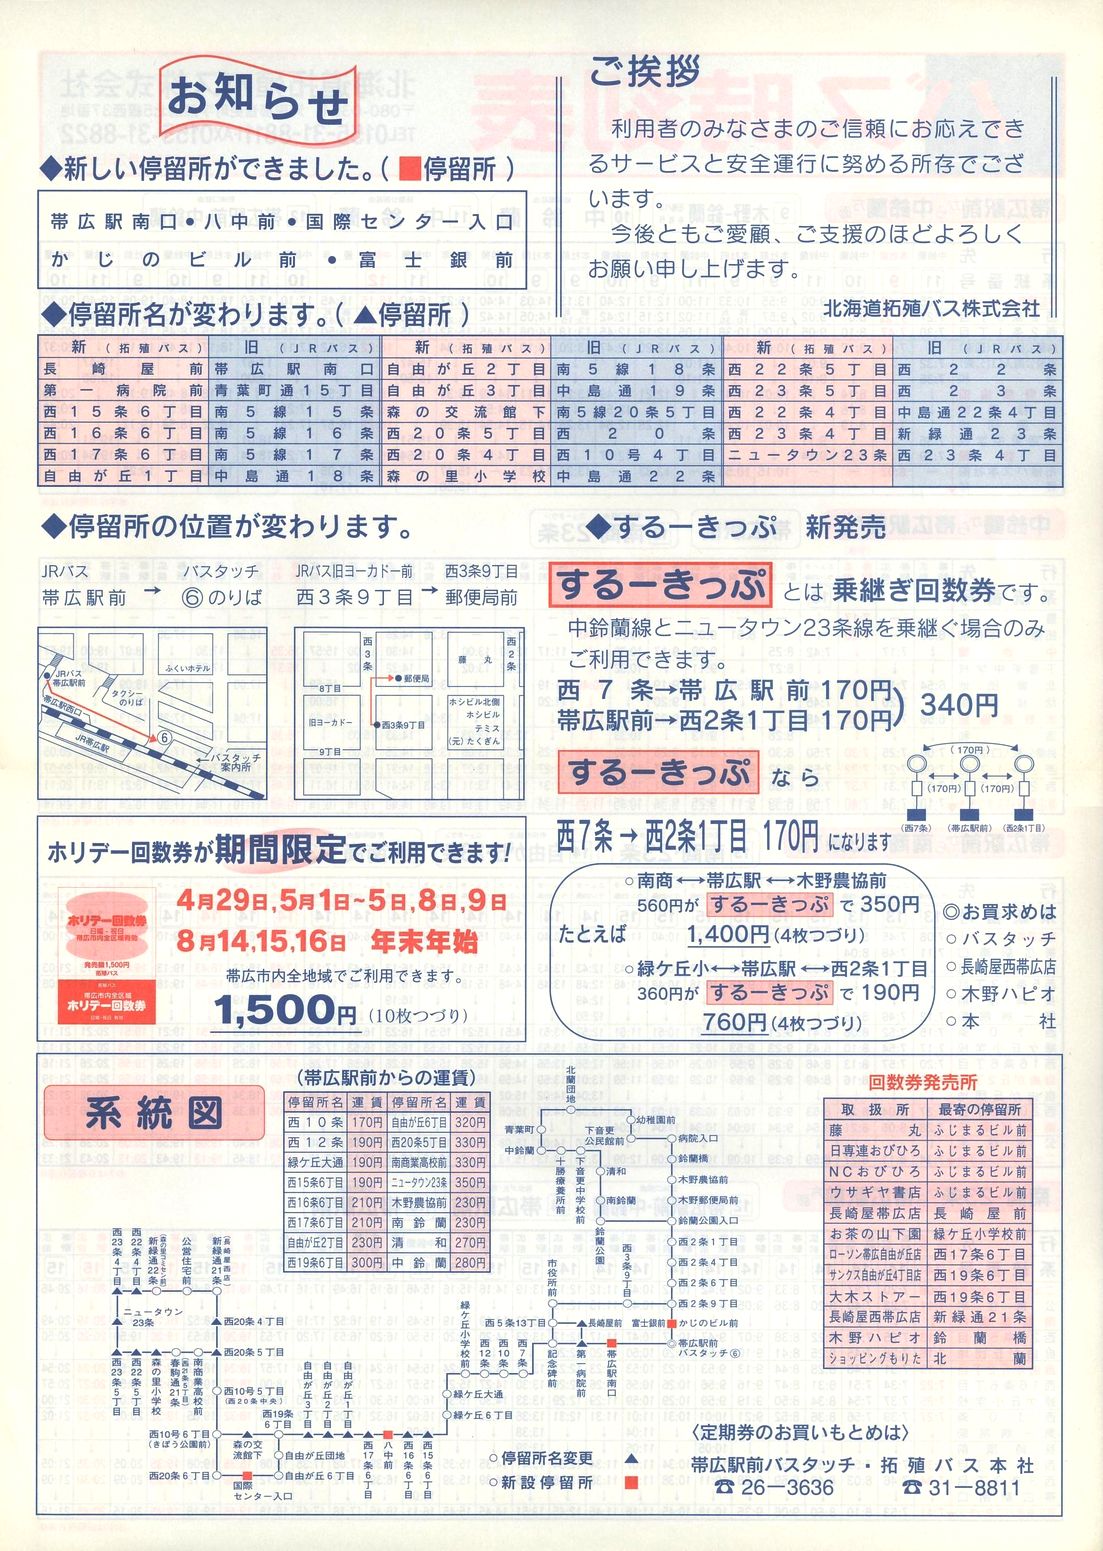 1999-04-26改正_北海道拓殖バス_中鈴蘭線・西23条線時刻表裏面